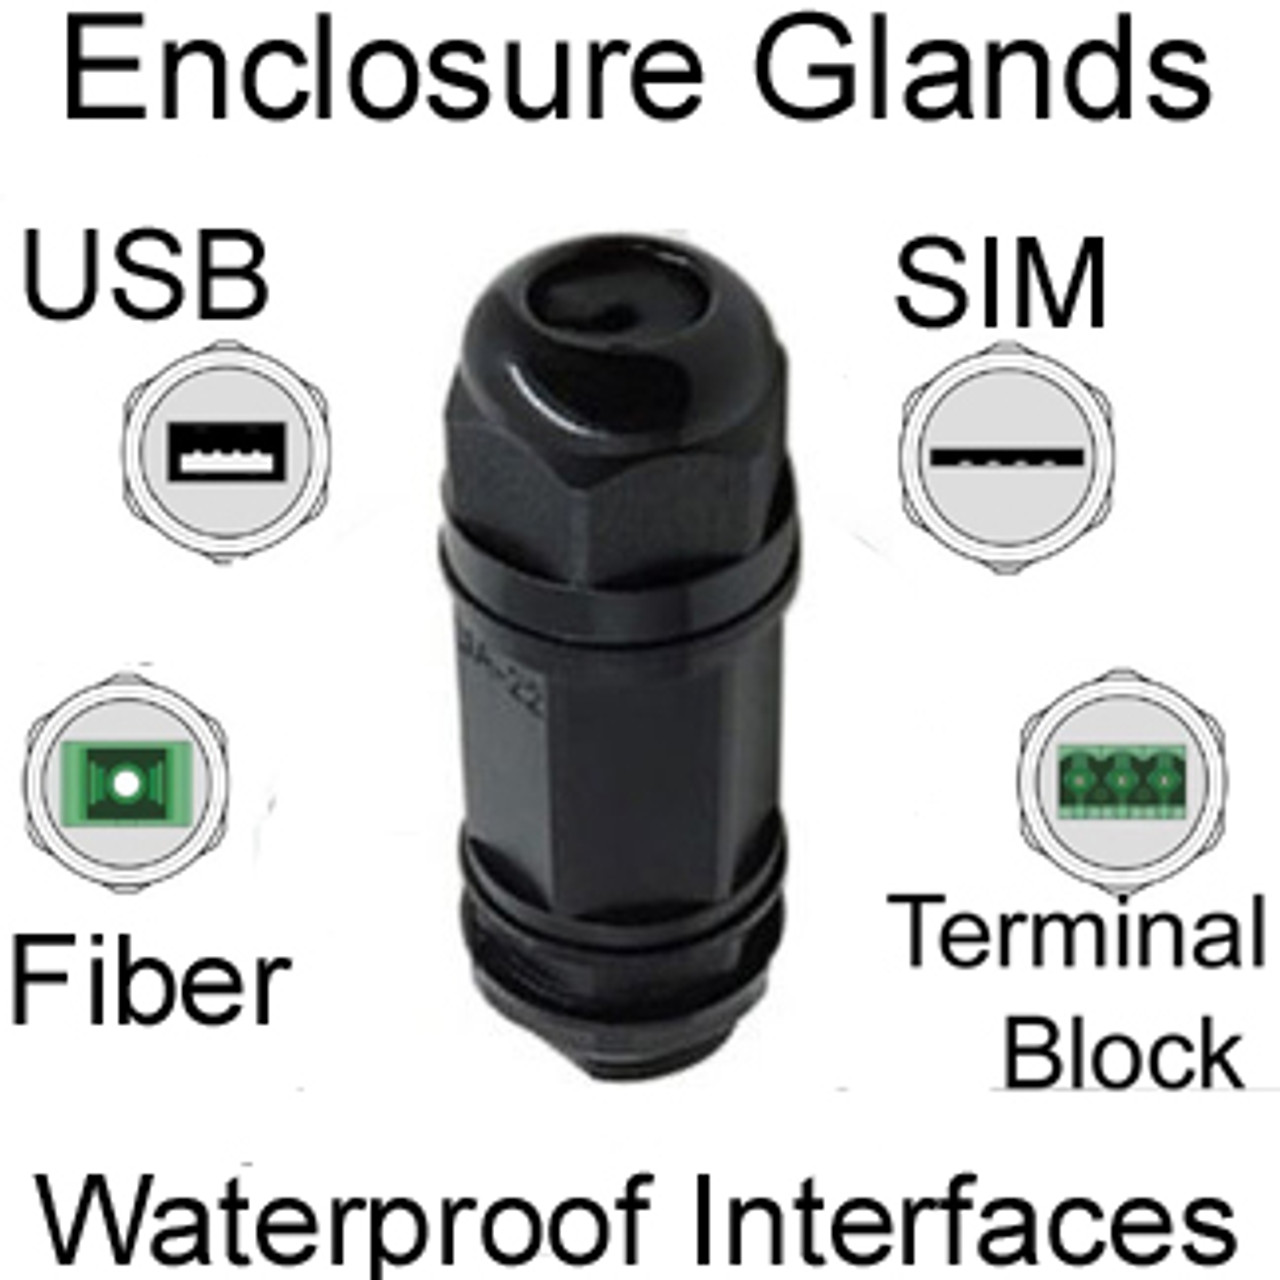 Cable for Fiber, USB, SIM, Terminal Block: Waterproof